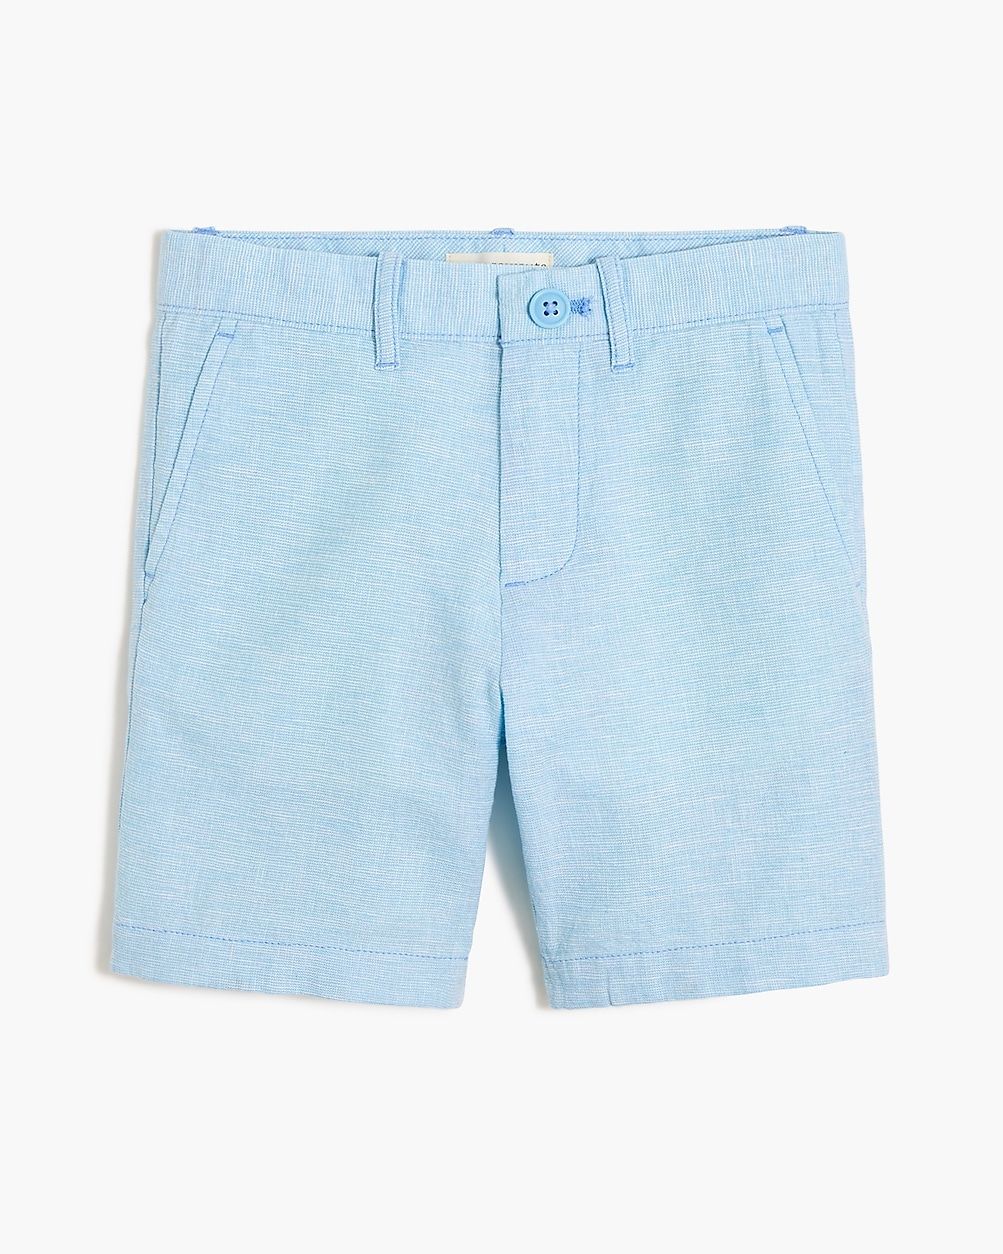 Boys' linen-blend short | J.Crew Factory